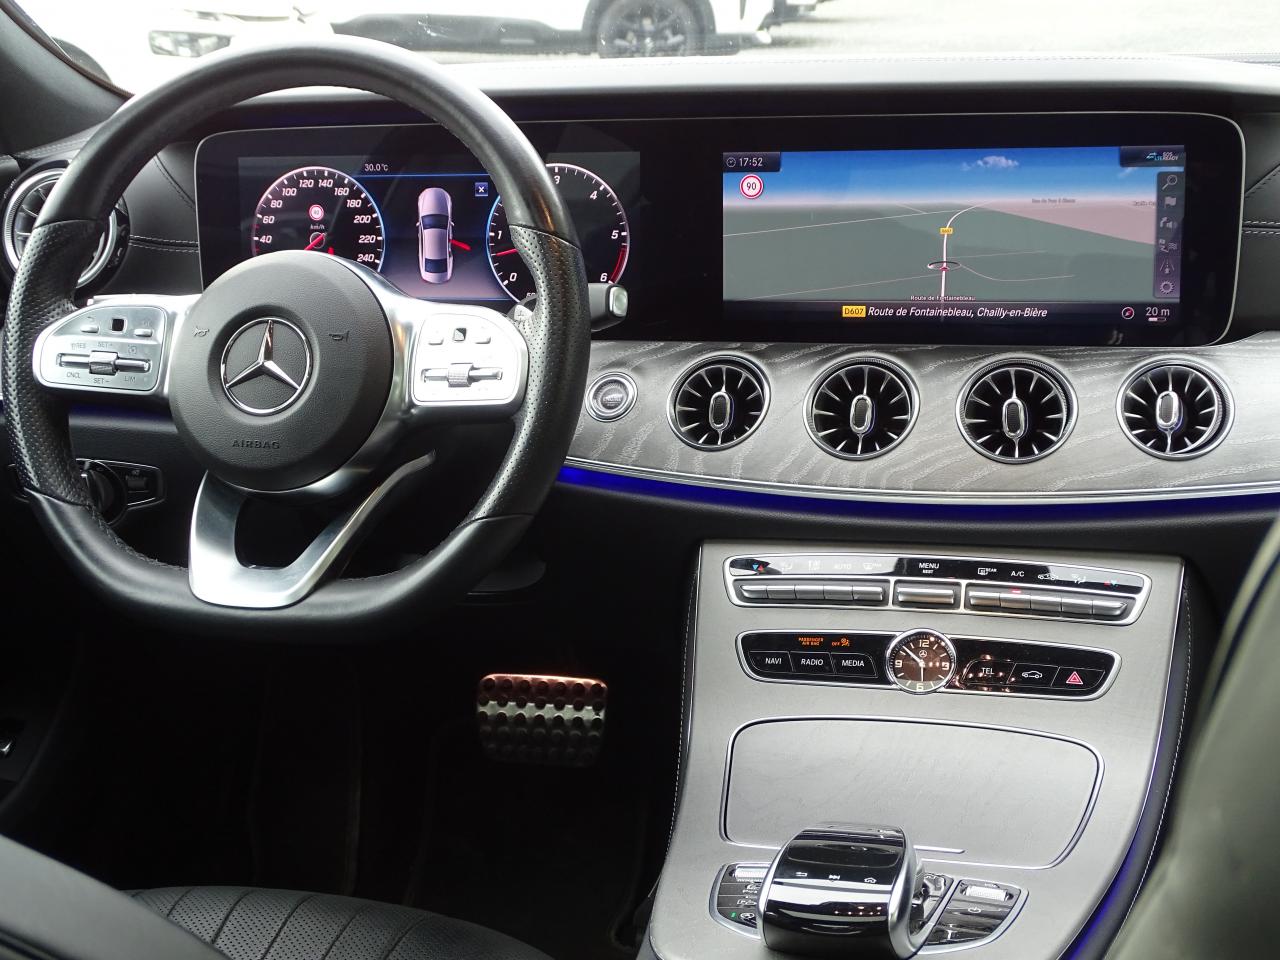 Mercedes Cls